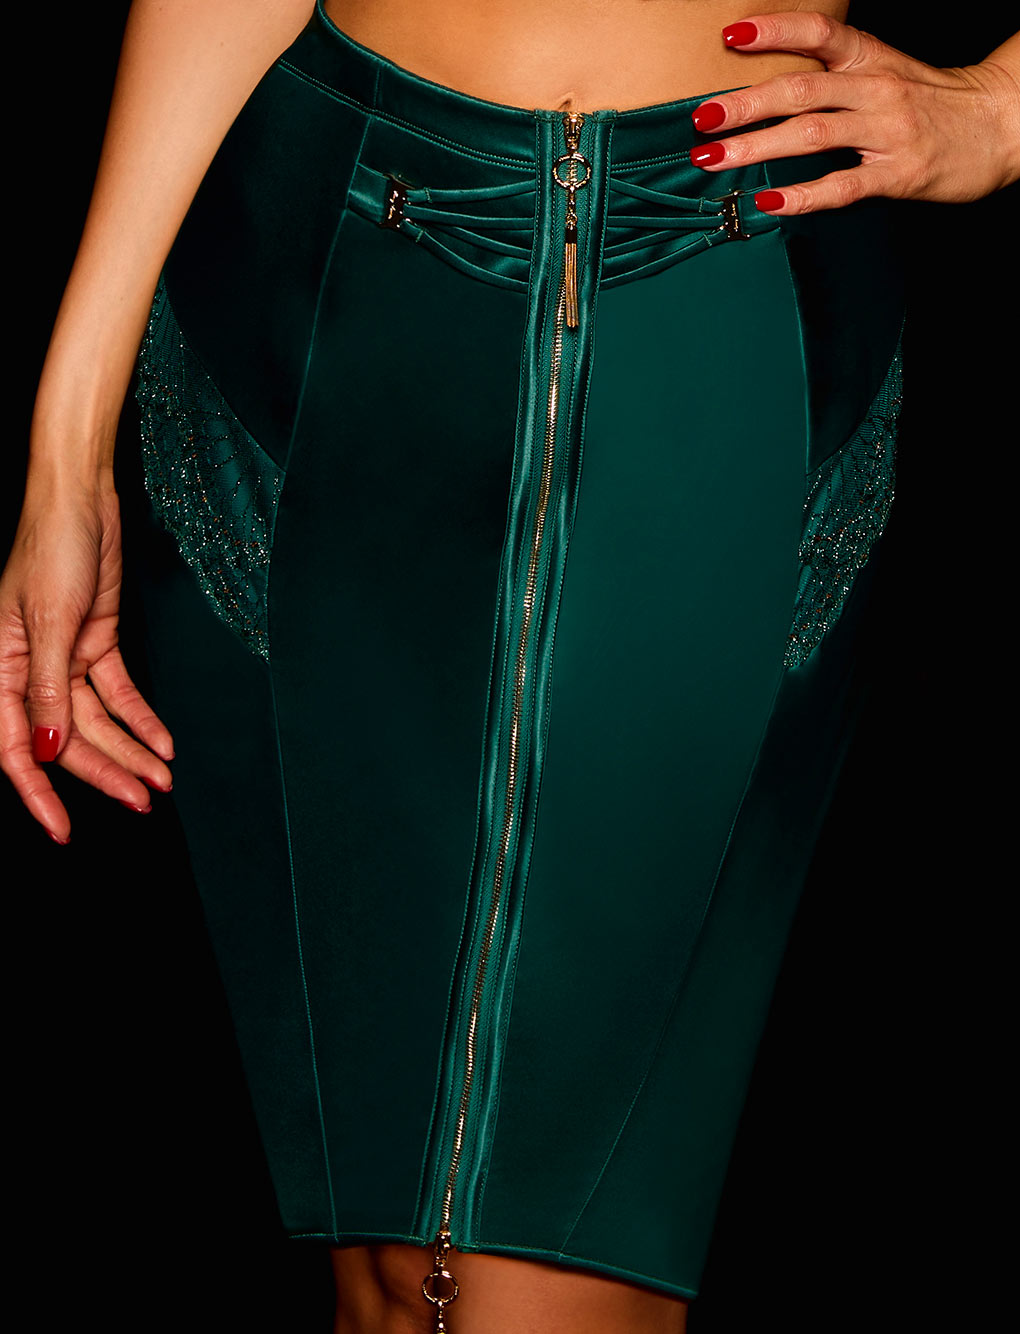 Gloria Emerald Bustier & Skirt Lingerie Set